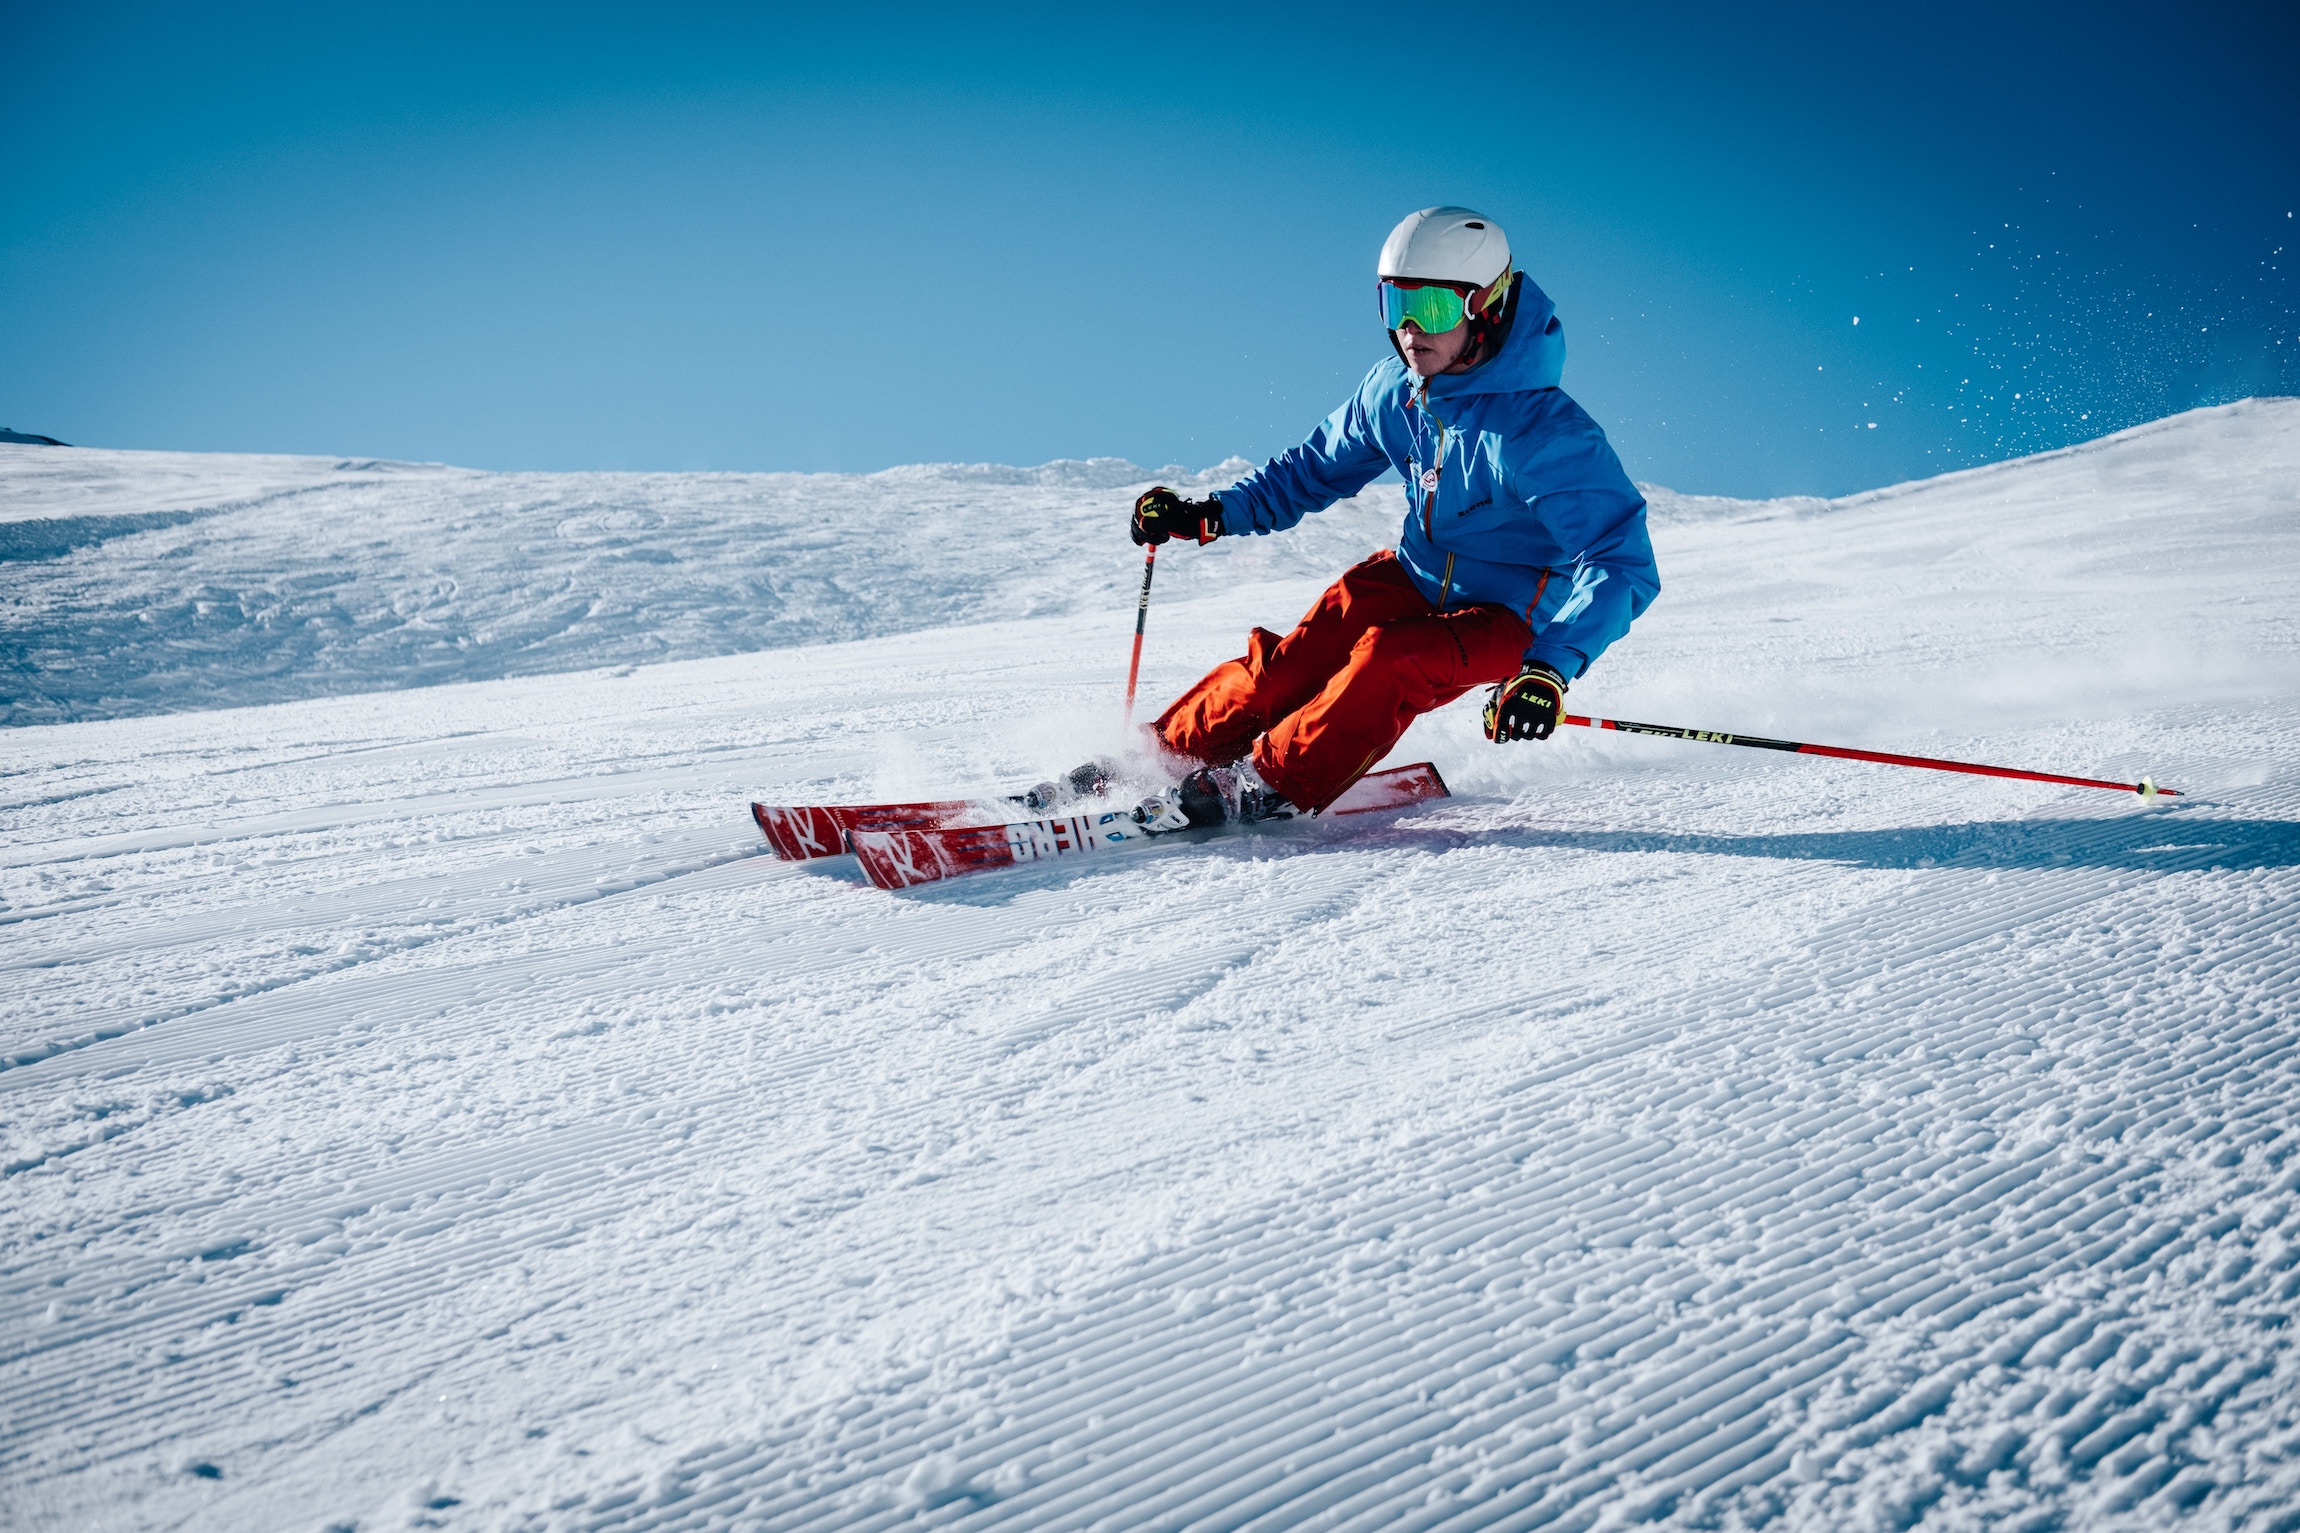 Comment laver une combinaison de ski ? - VTR Voyages : Le Blog